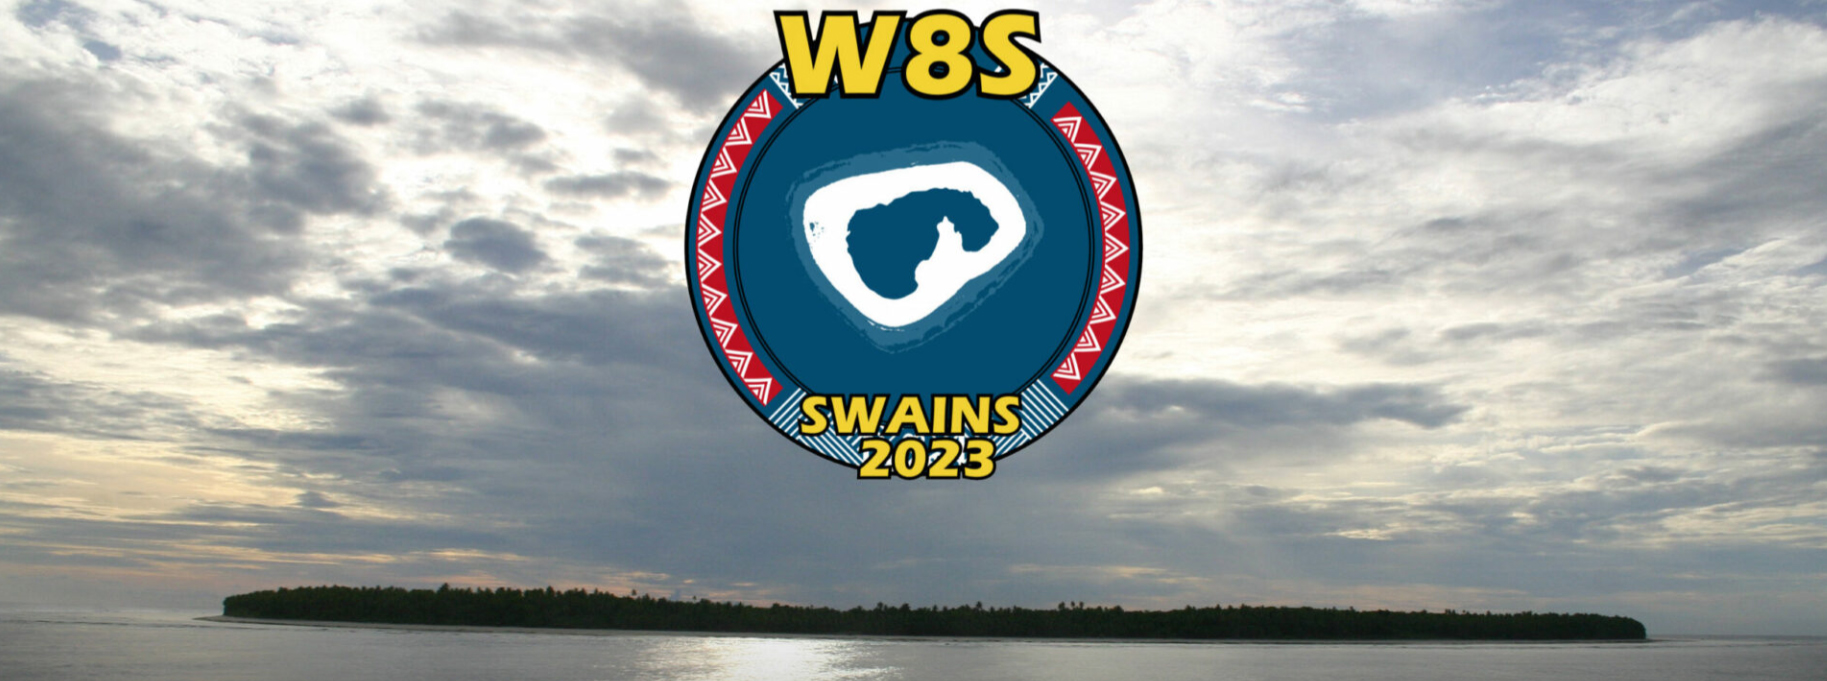 W8S Swains Island saranno attivi in FT8